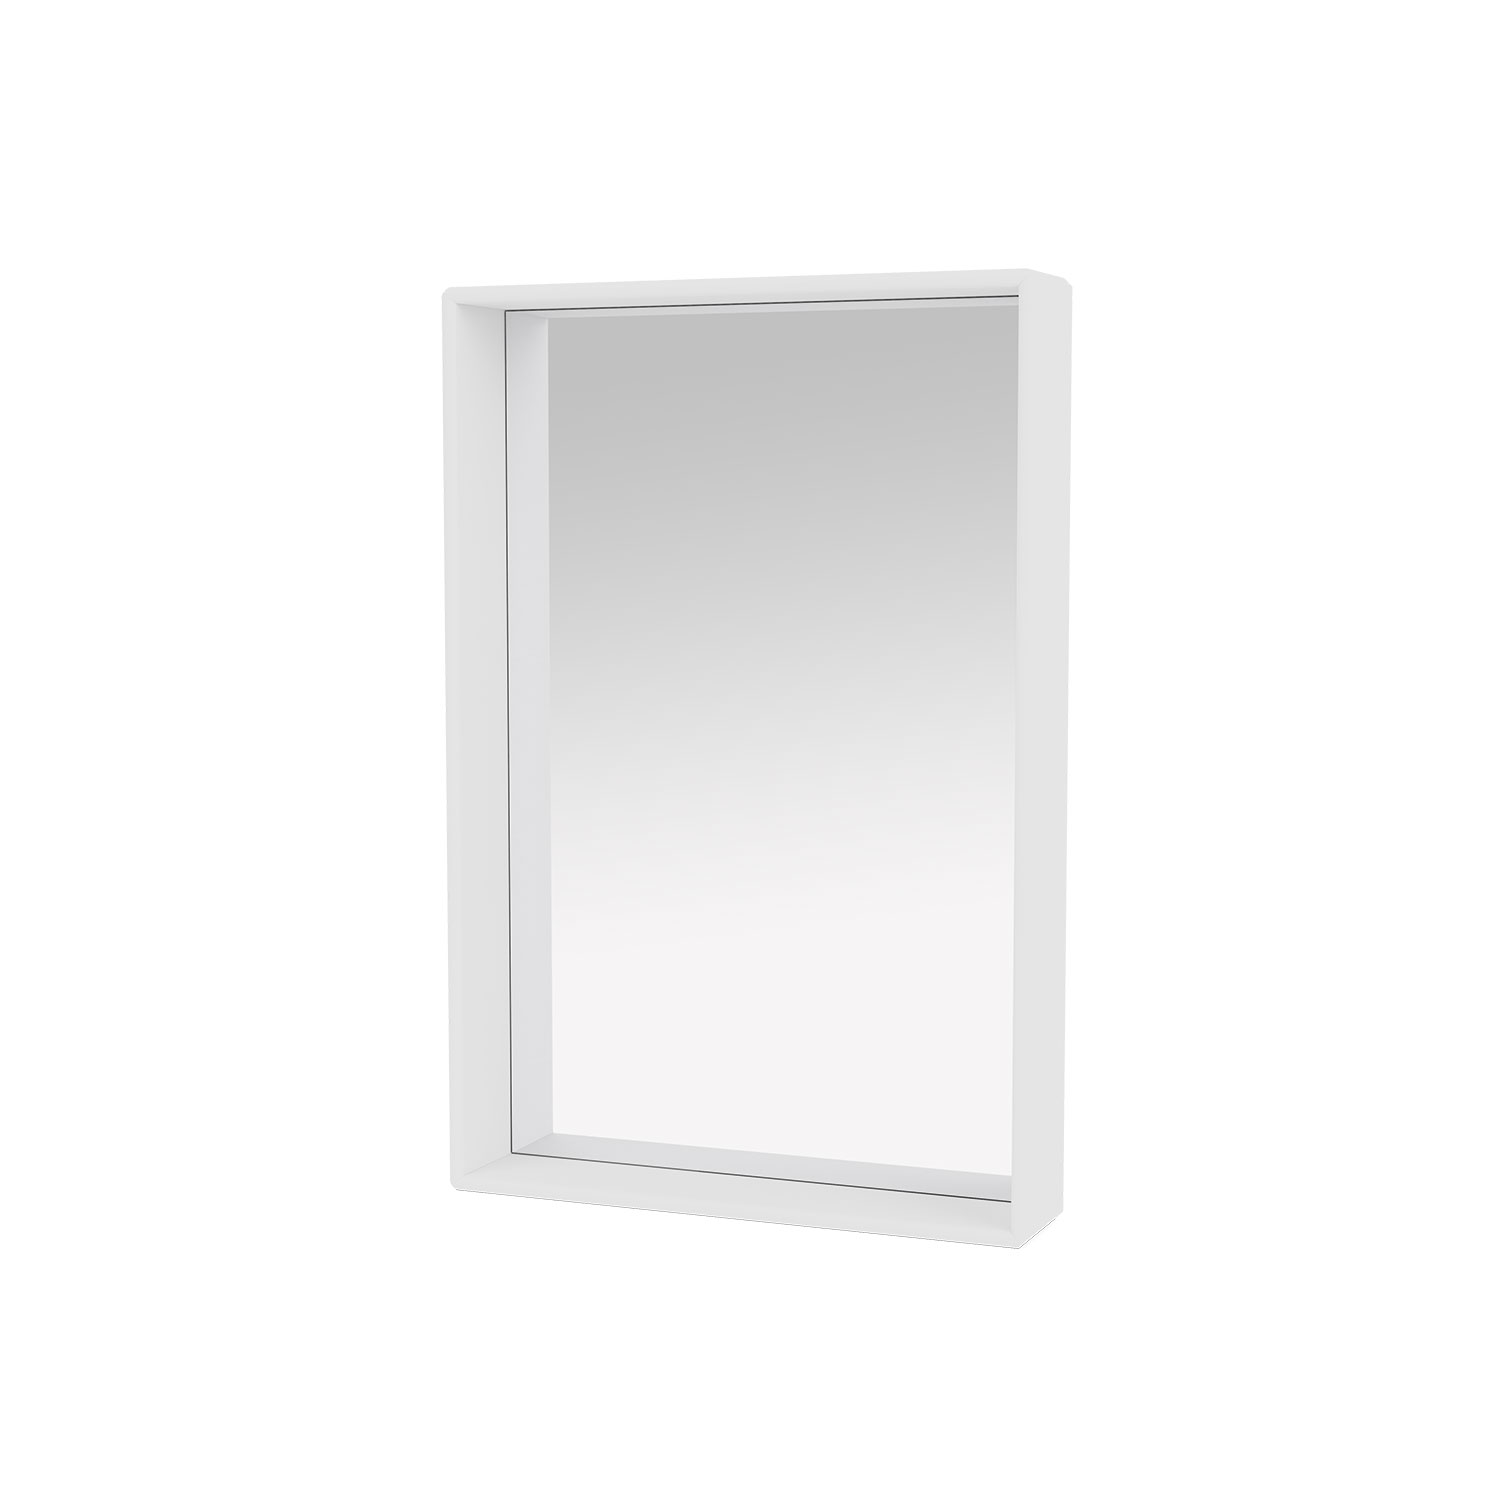 SHELFIE mirror with shelf, New White